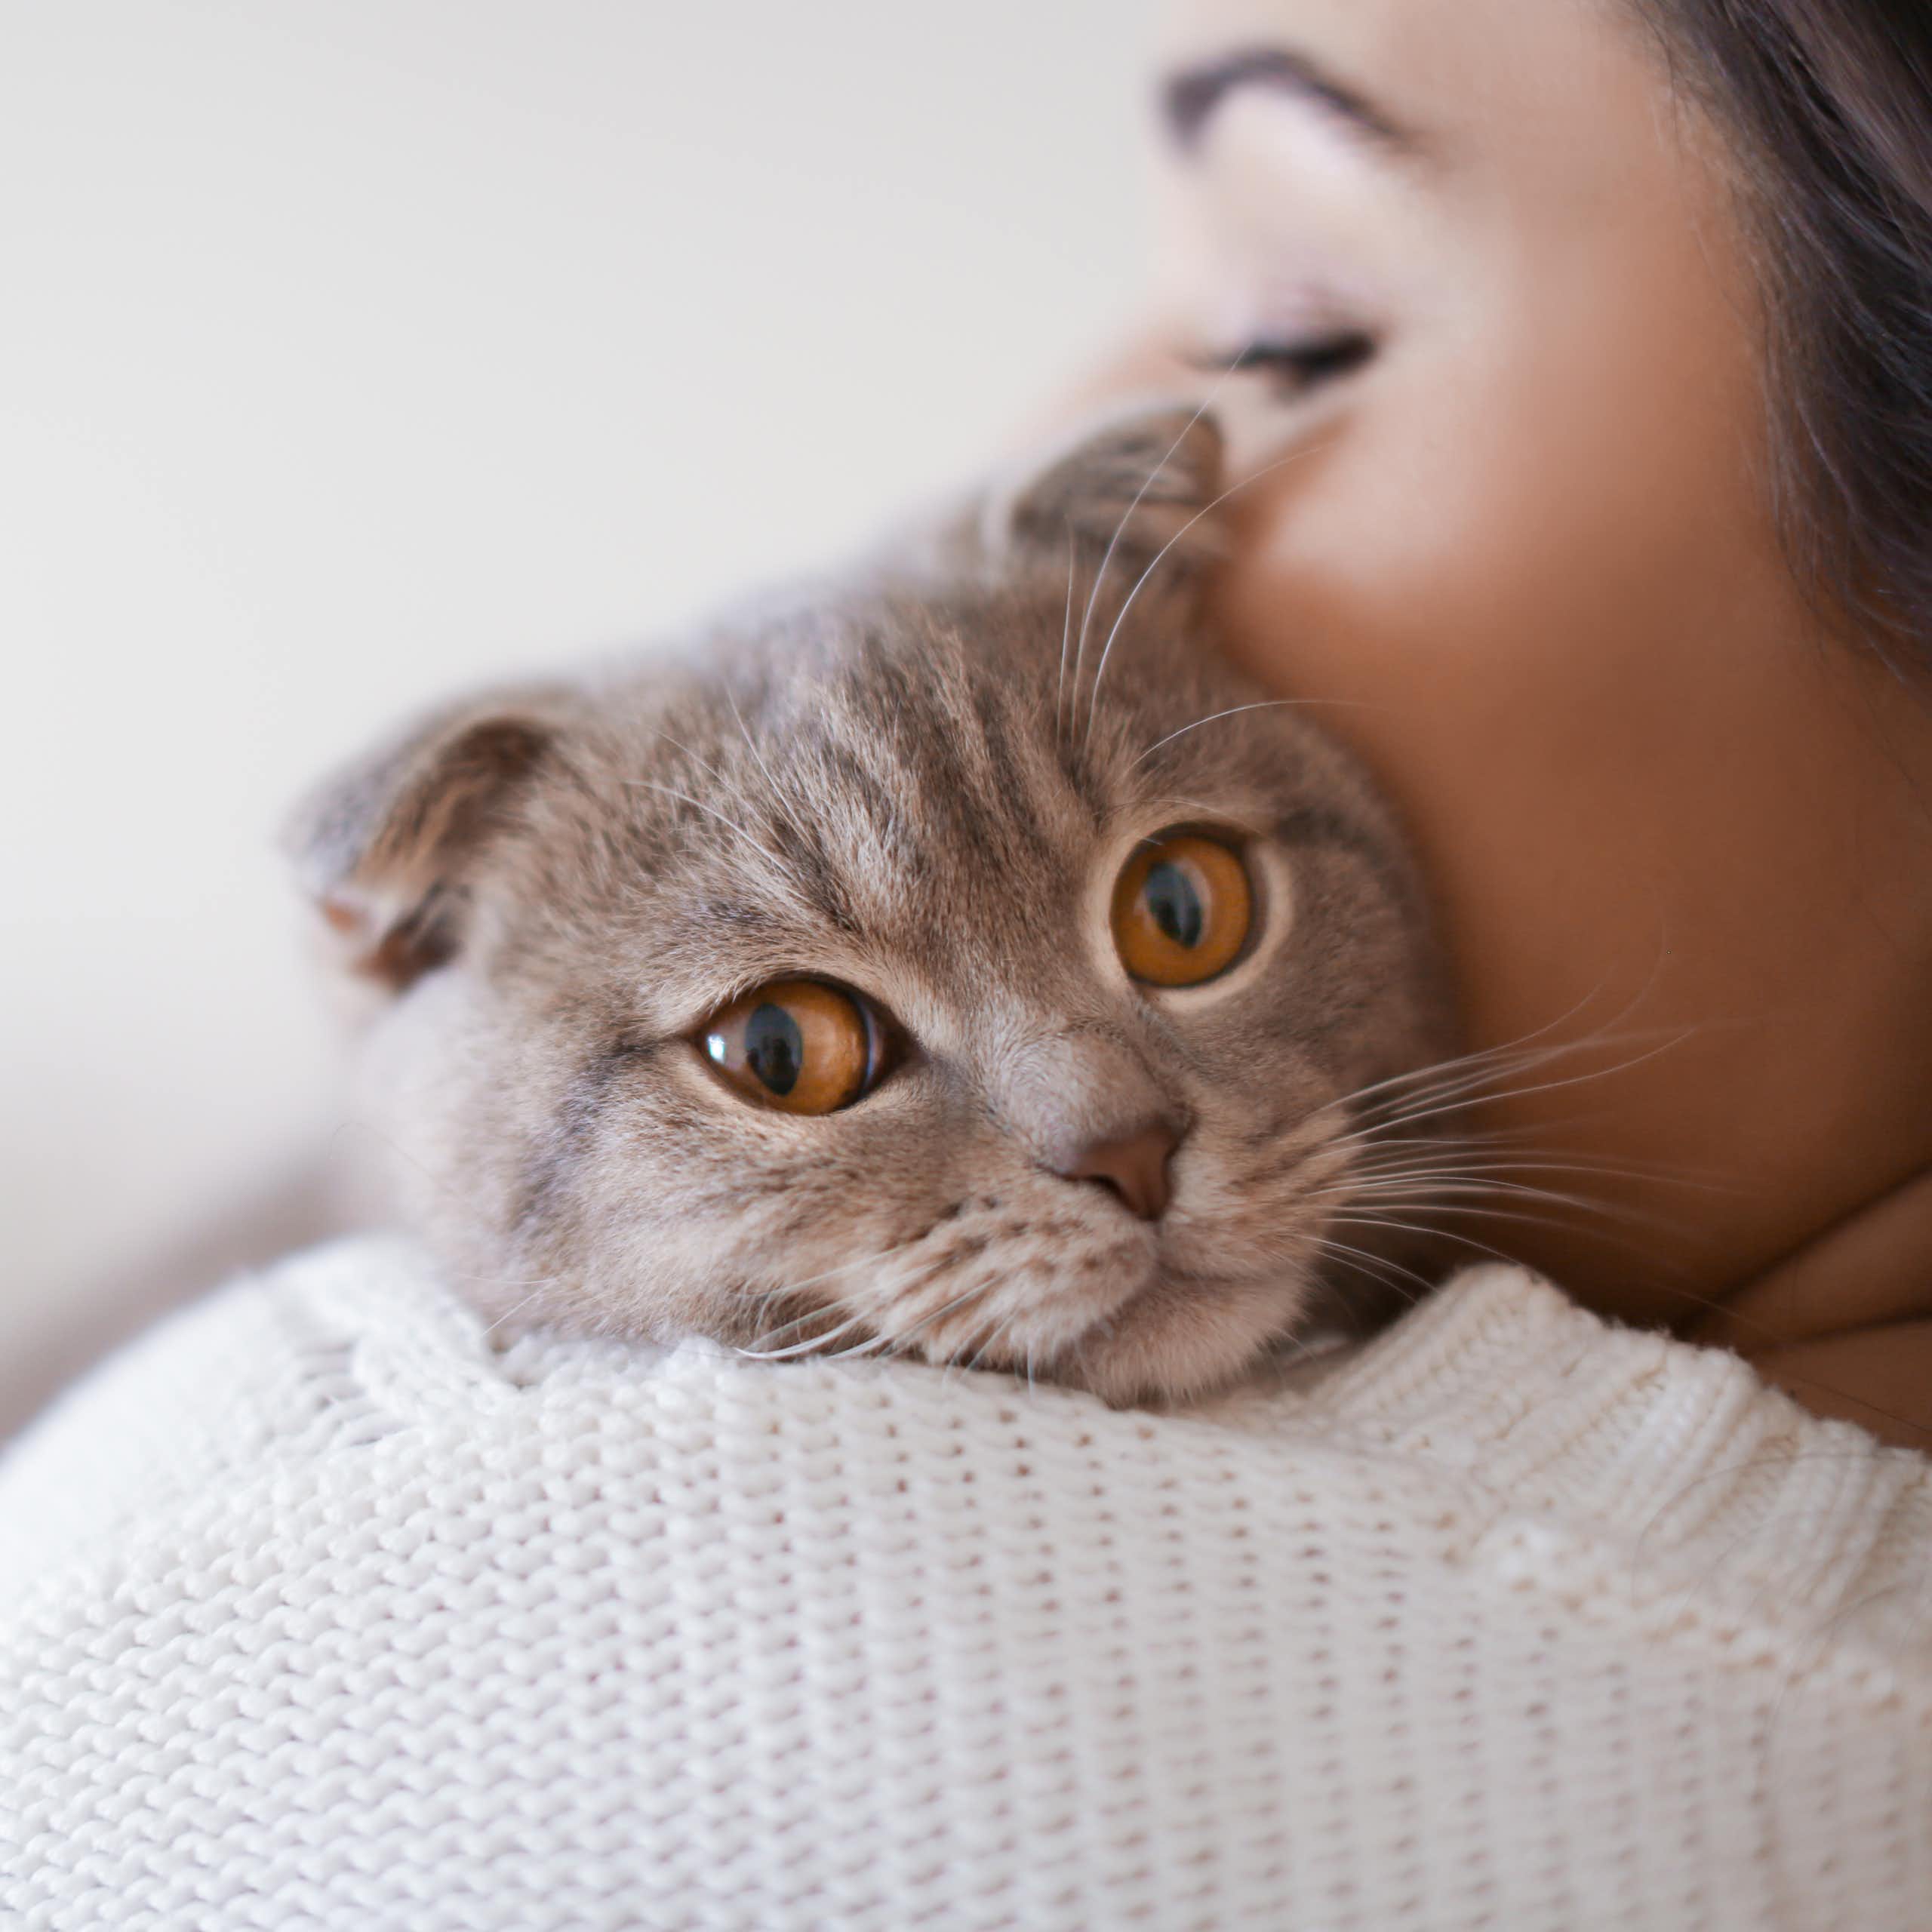 Grey cat peeking over woman's shoulder